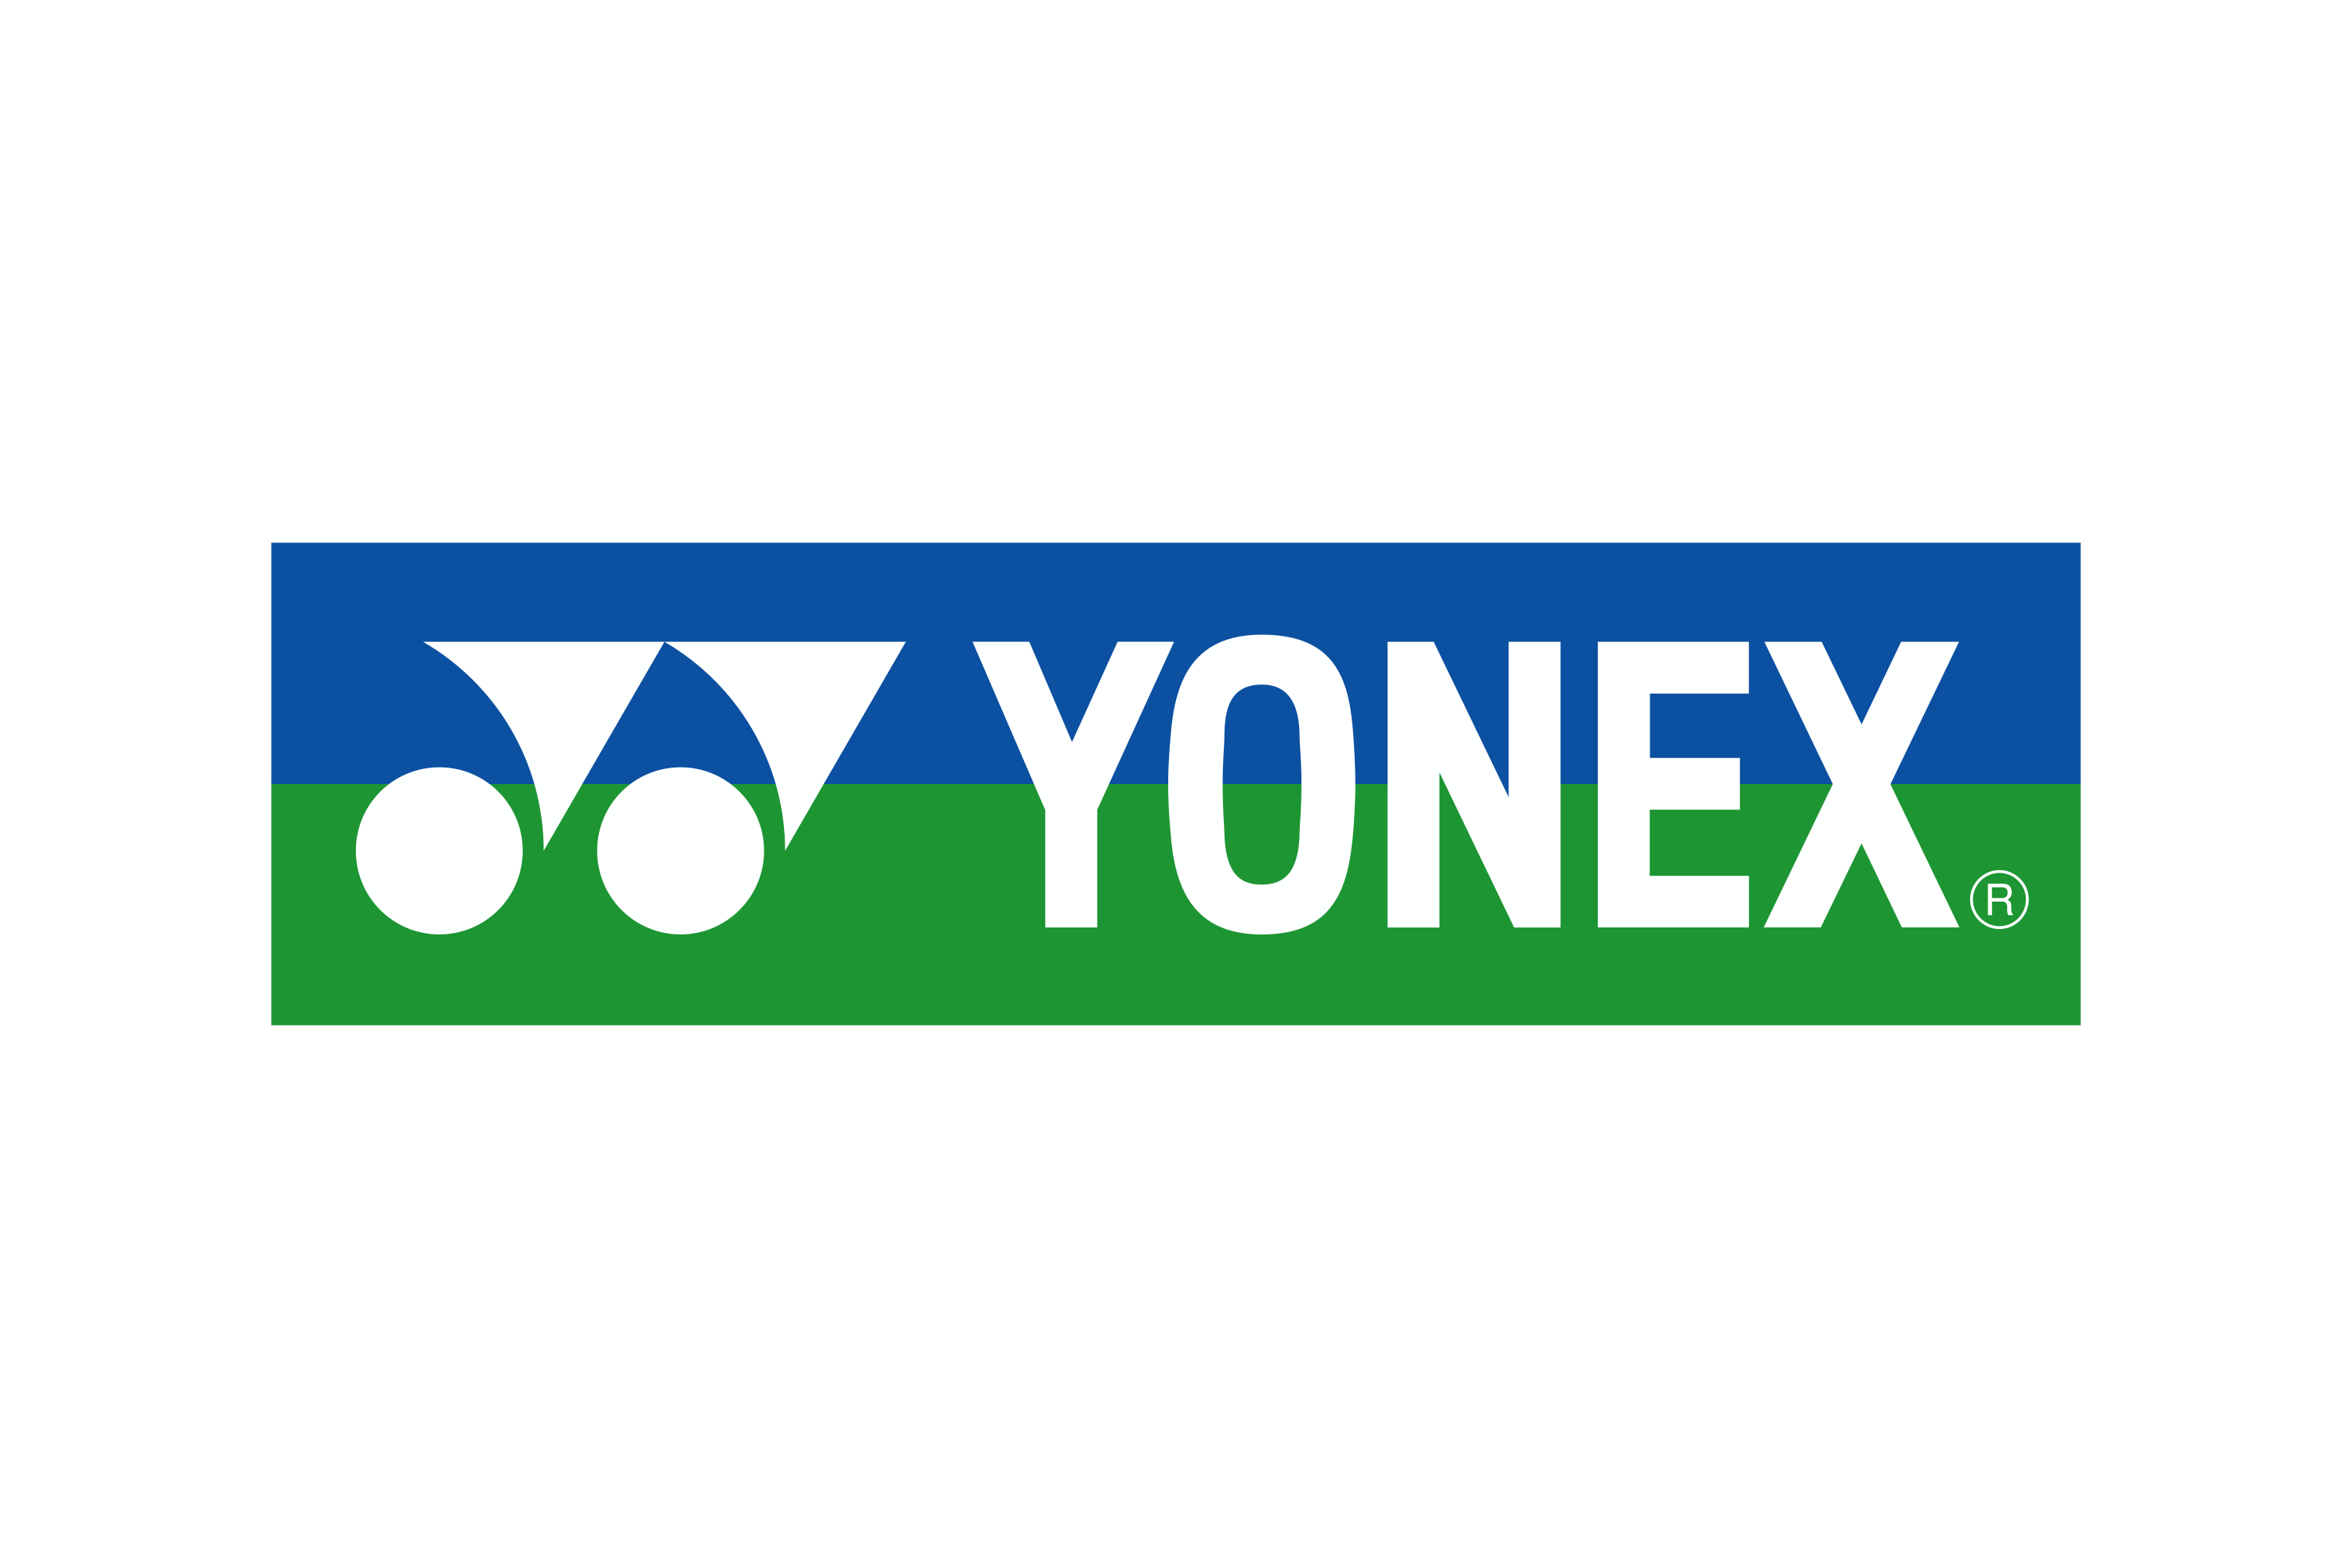 Yonex Logo